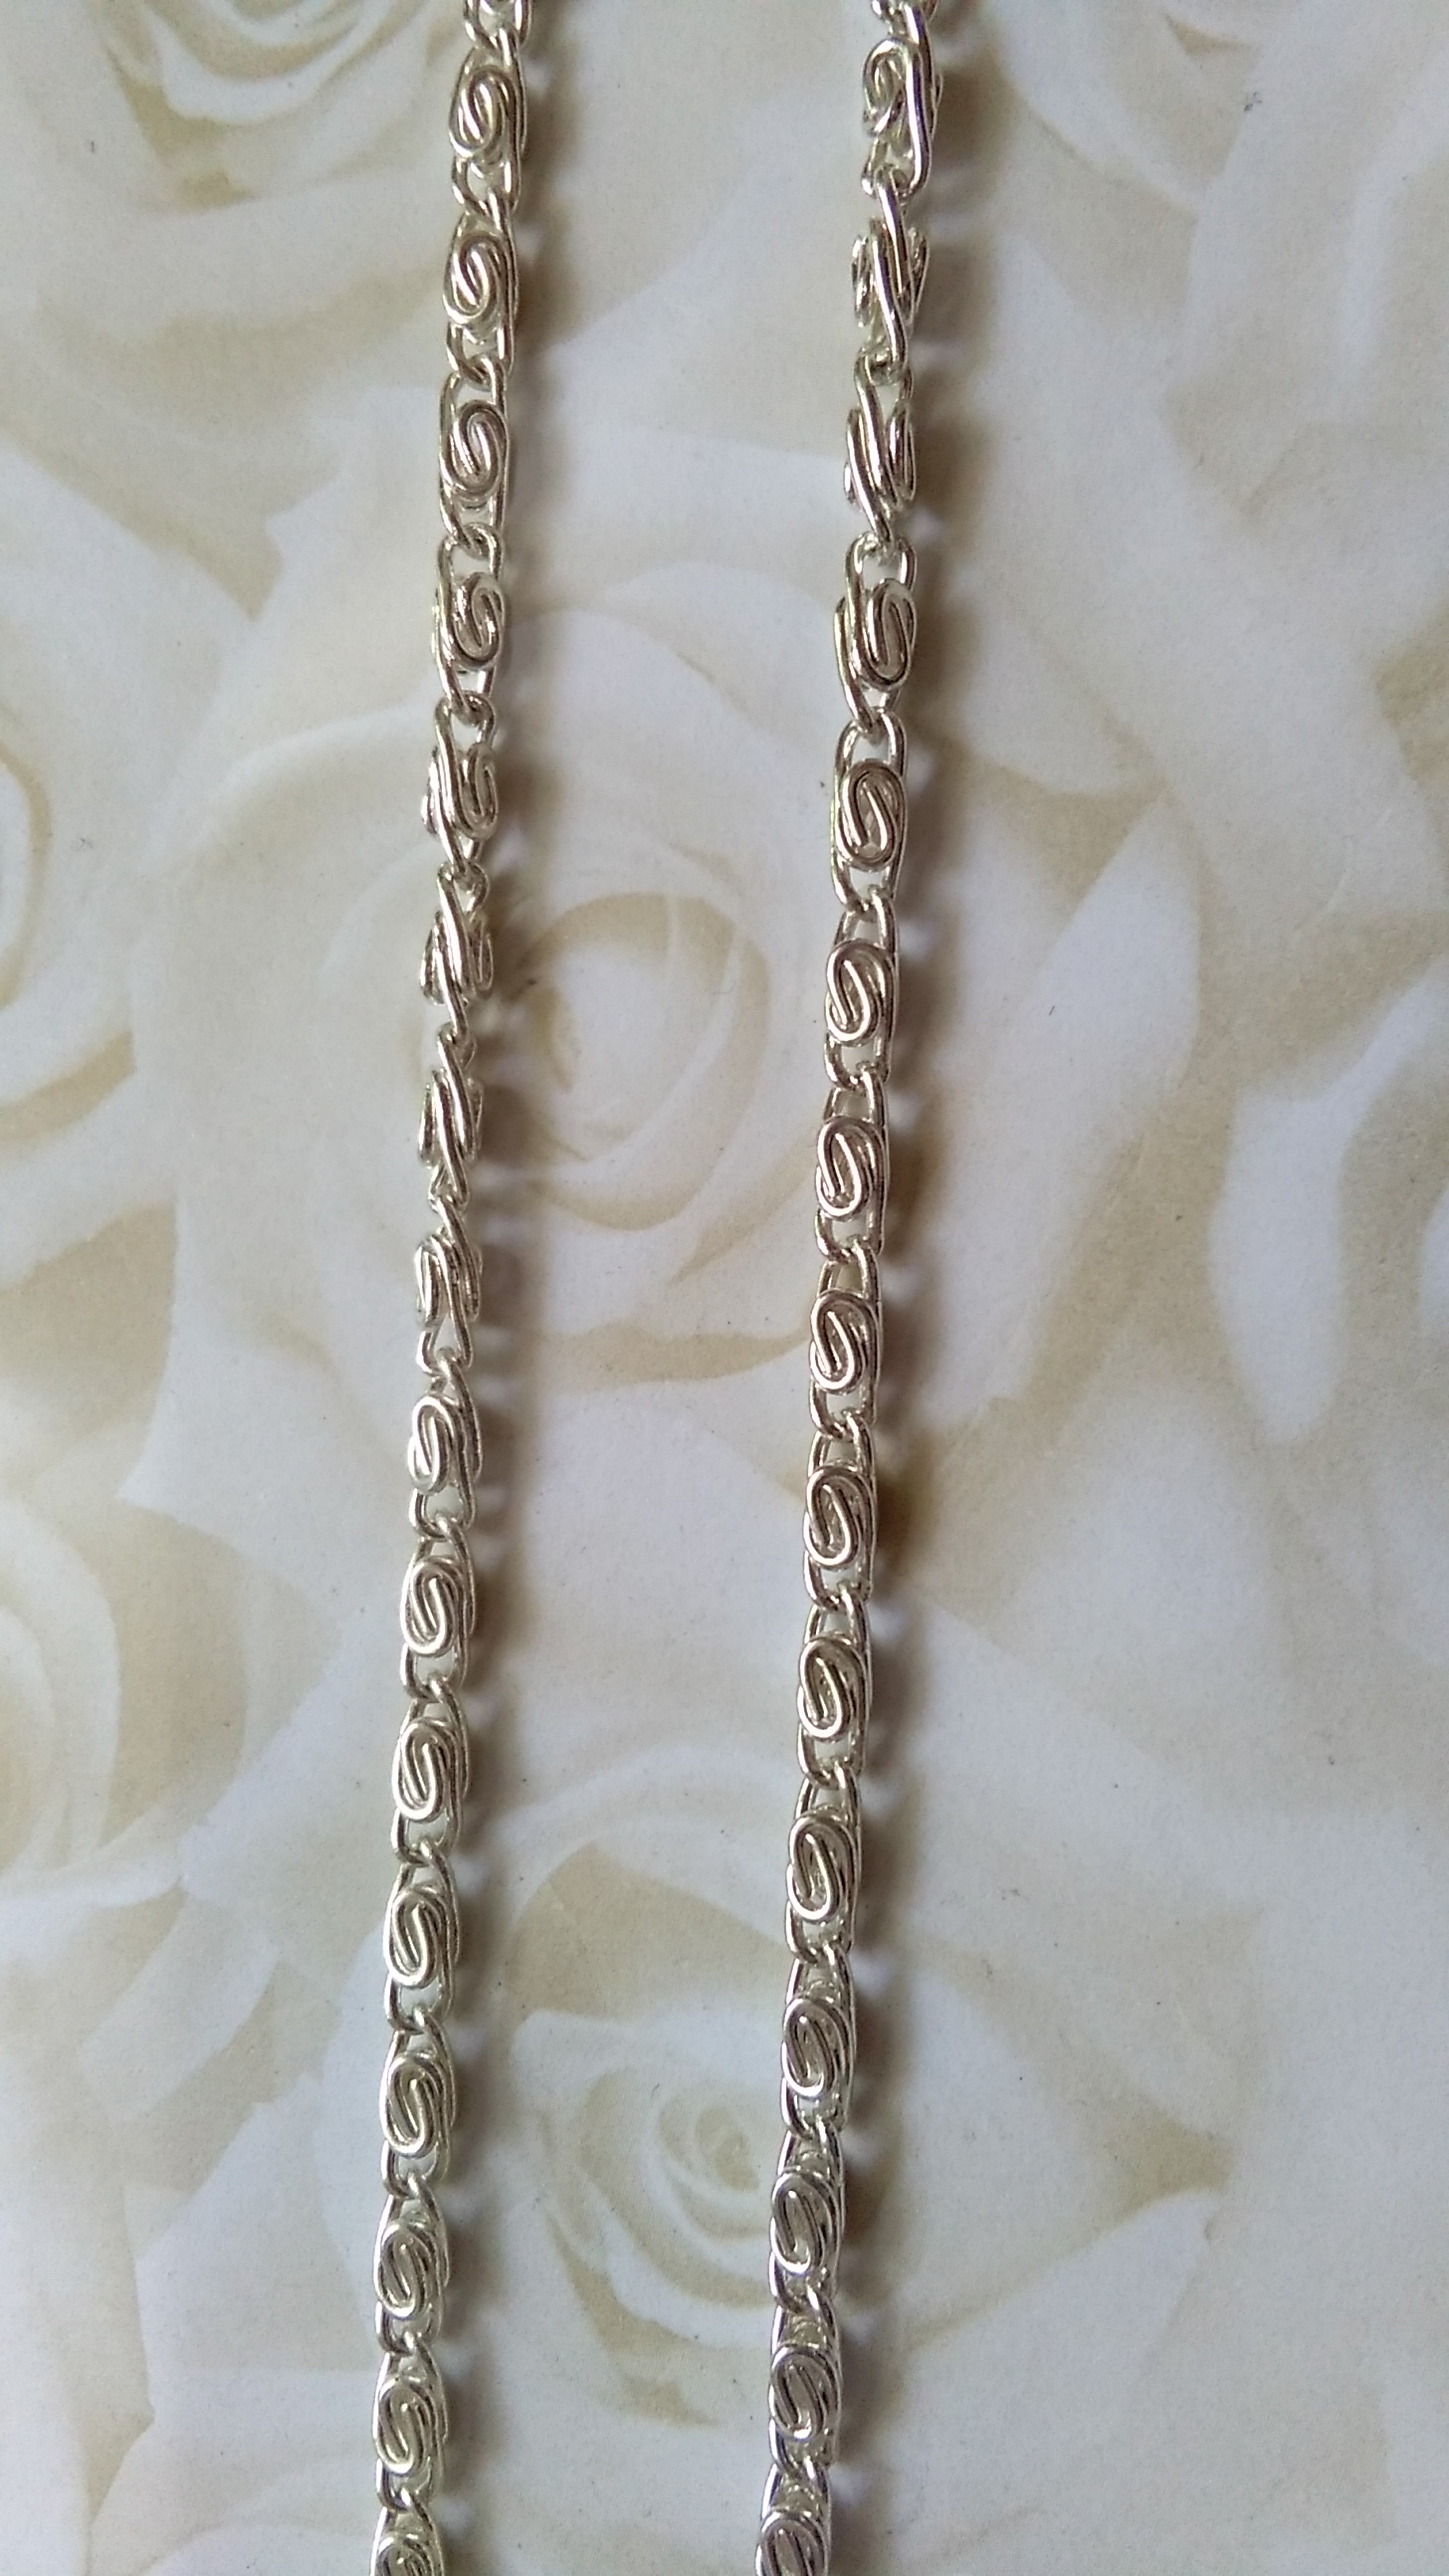 Silver Myriad Chain - 1 metre